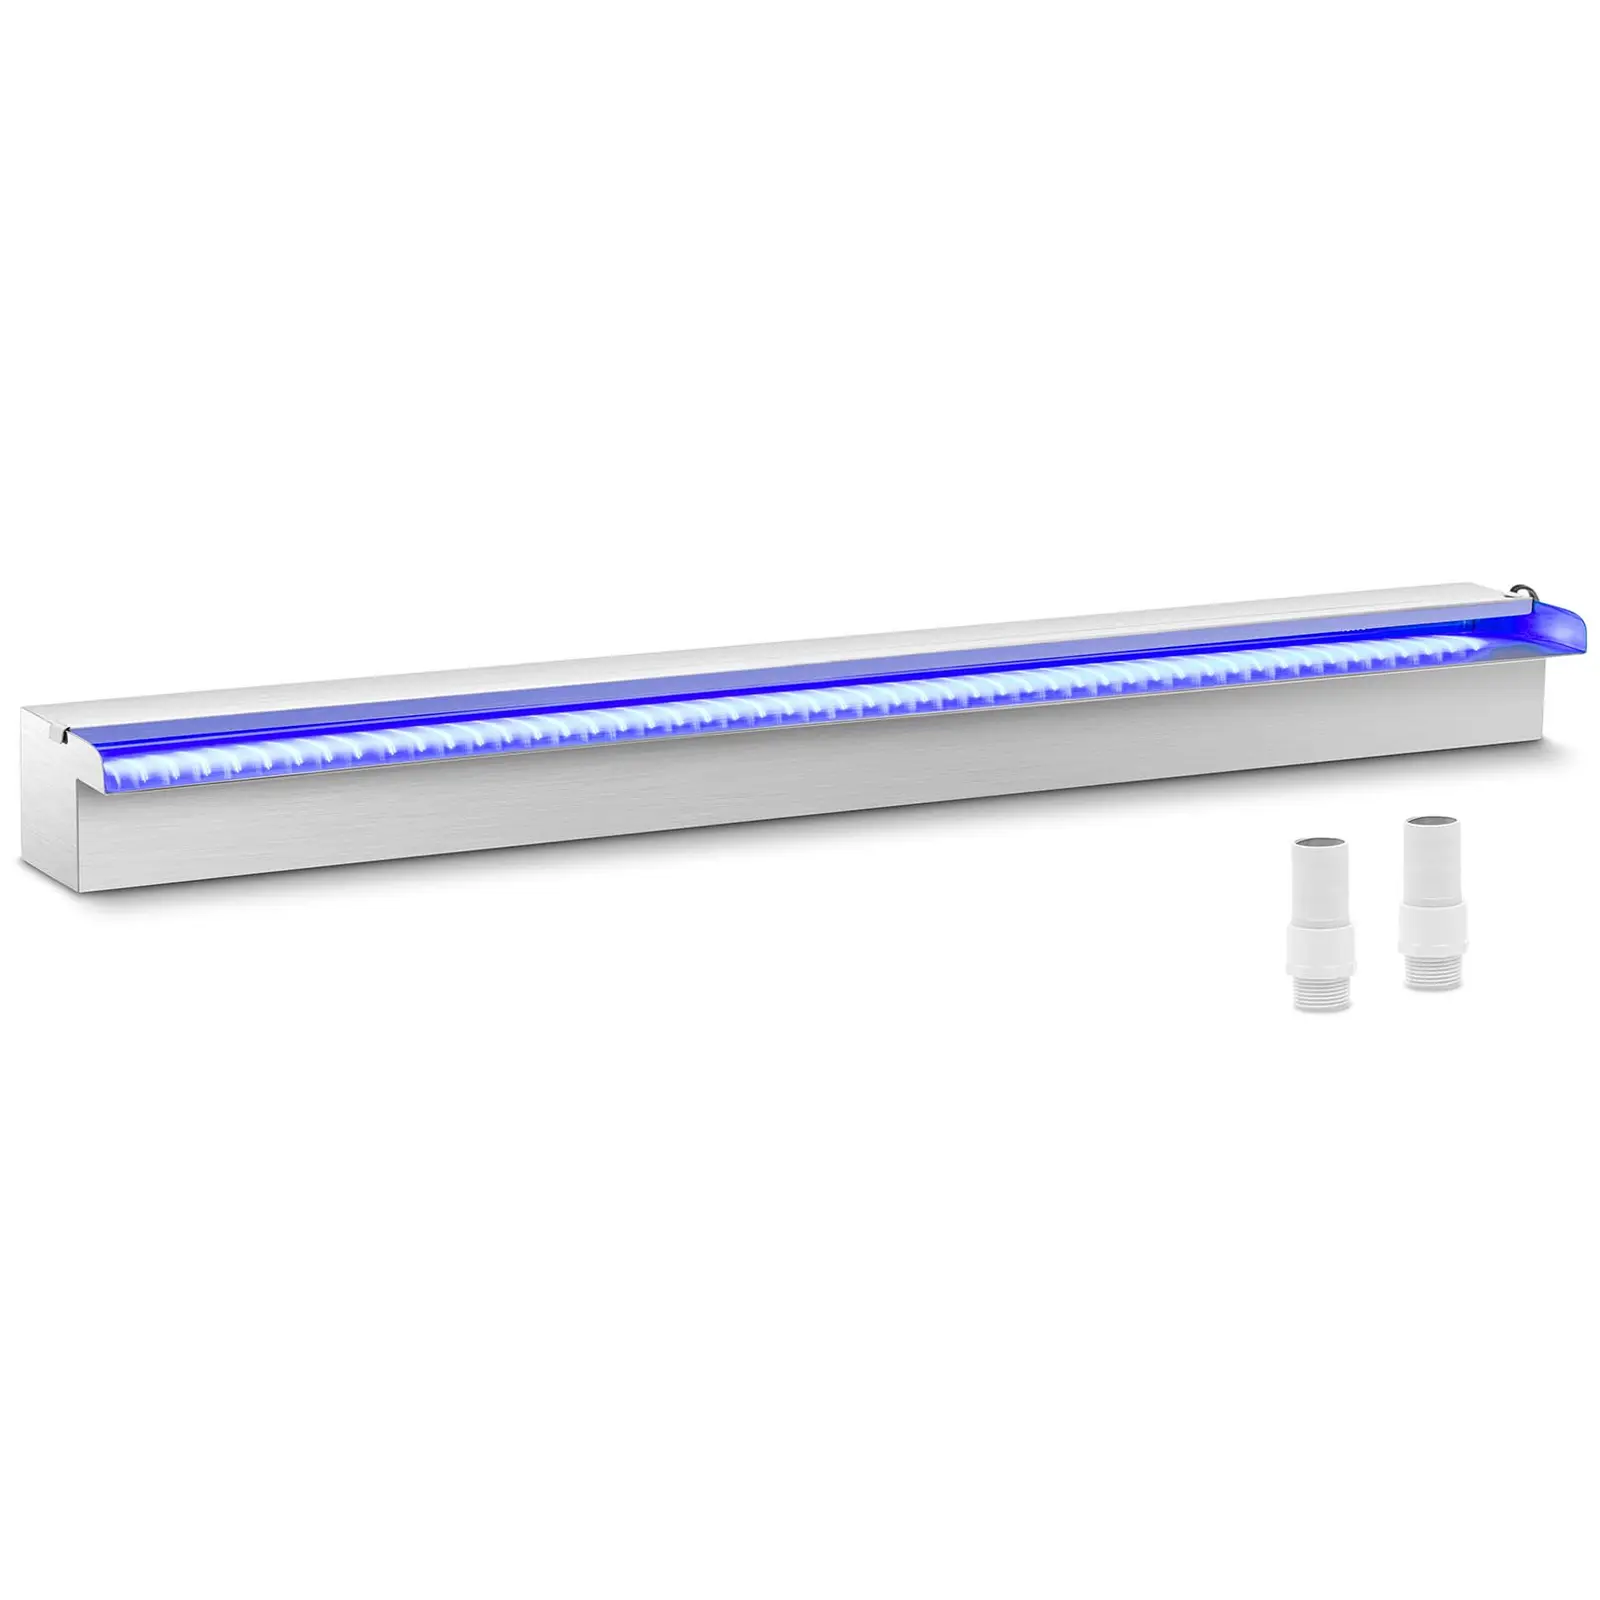 Chrlič vody - 90 cm - LED osvětlení - modrá/bílá